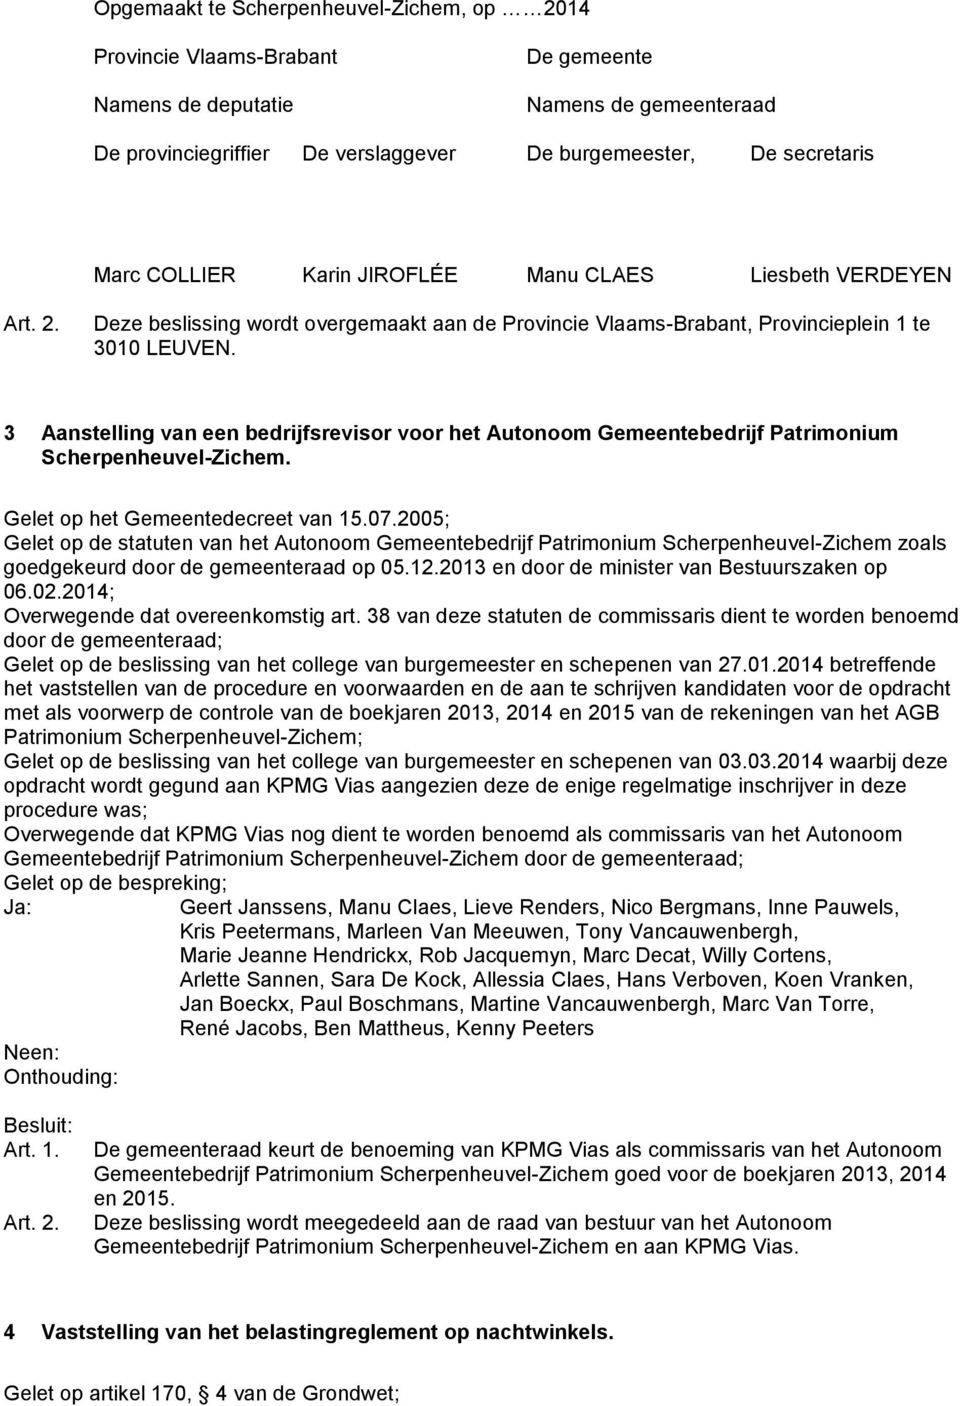 3 Aanstelling van een bedrijfsrevisor voor het Autonoom Gemeentebedrijf Patrimonium Scherpenheuvel-Zichem. Gelet op het Gemeentedecreet van 15.07.